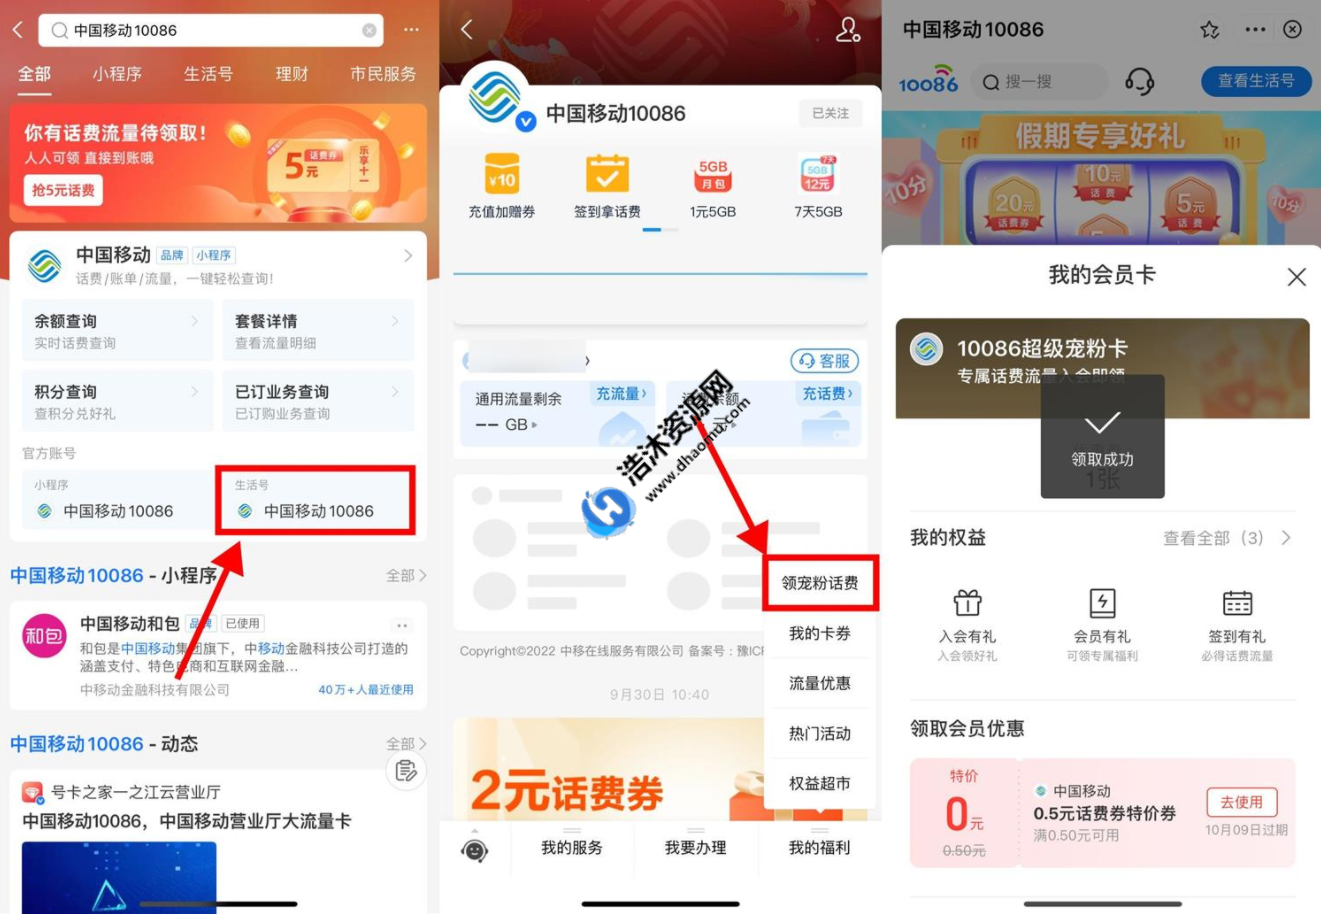 支付宝移动用户搜索中国移动免费领取0.5~1.5元话费